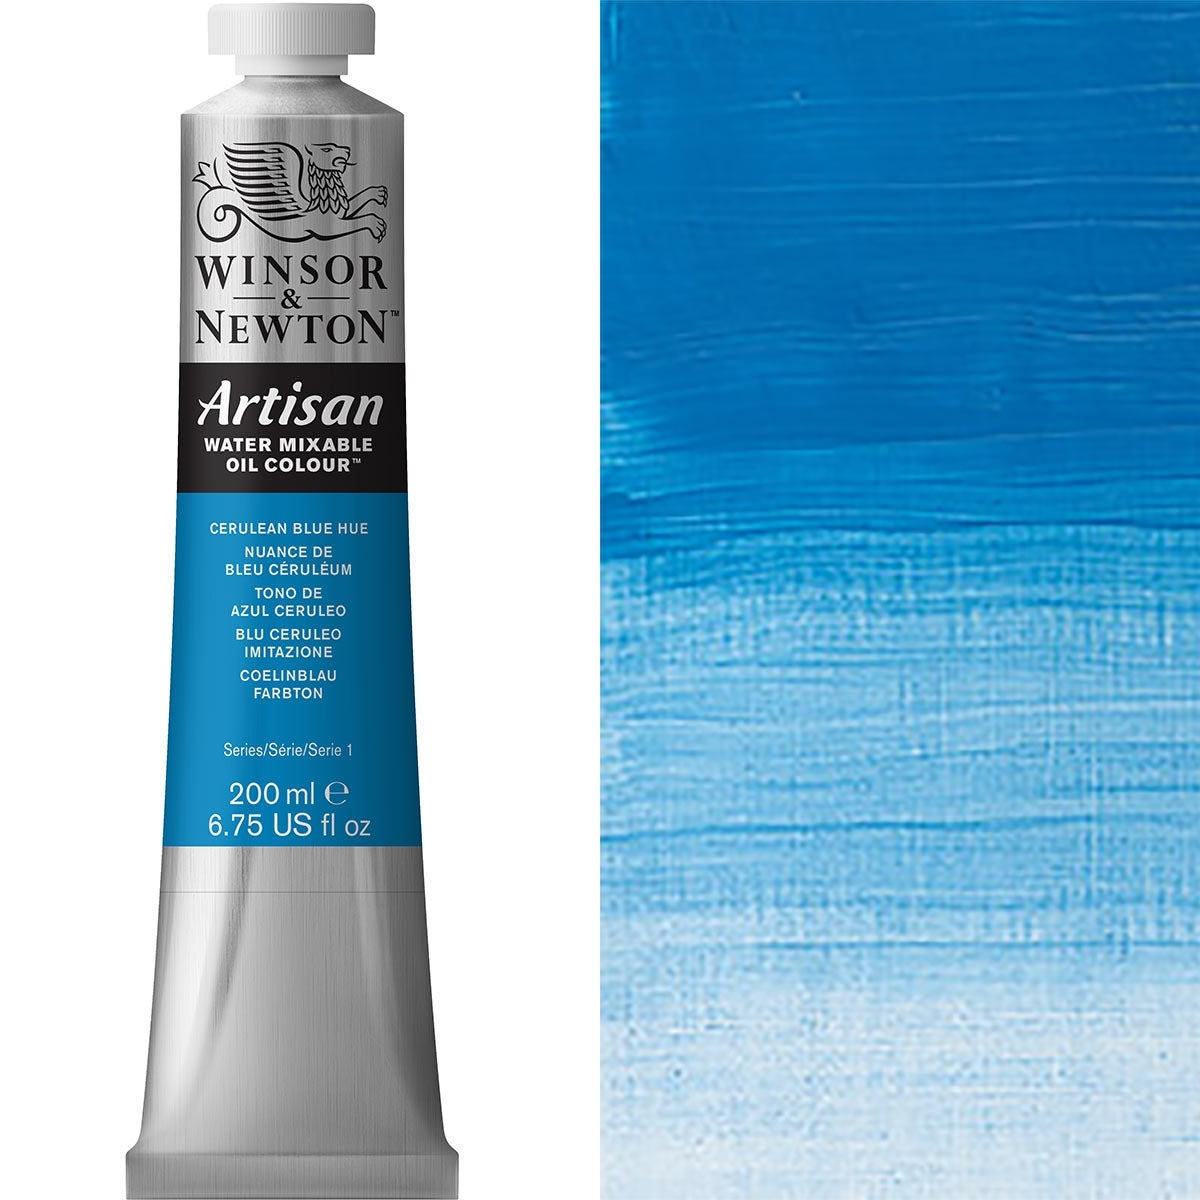 Winsor e Newton - Watermixable di colore olio artigianale - 200 ml - tonalità blu ceruleo